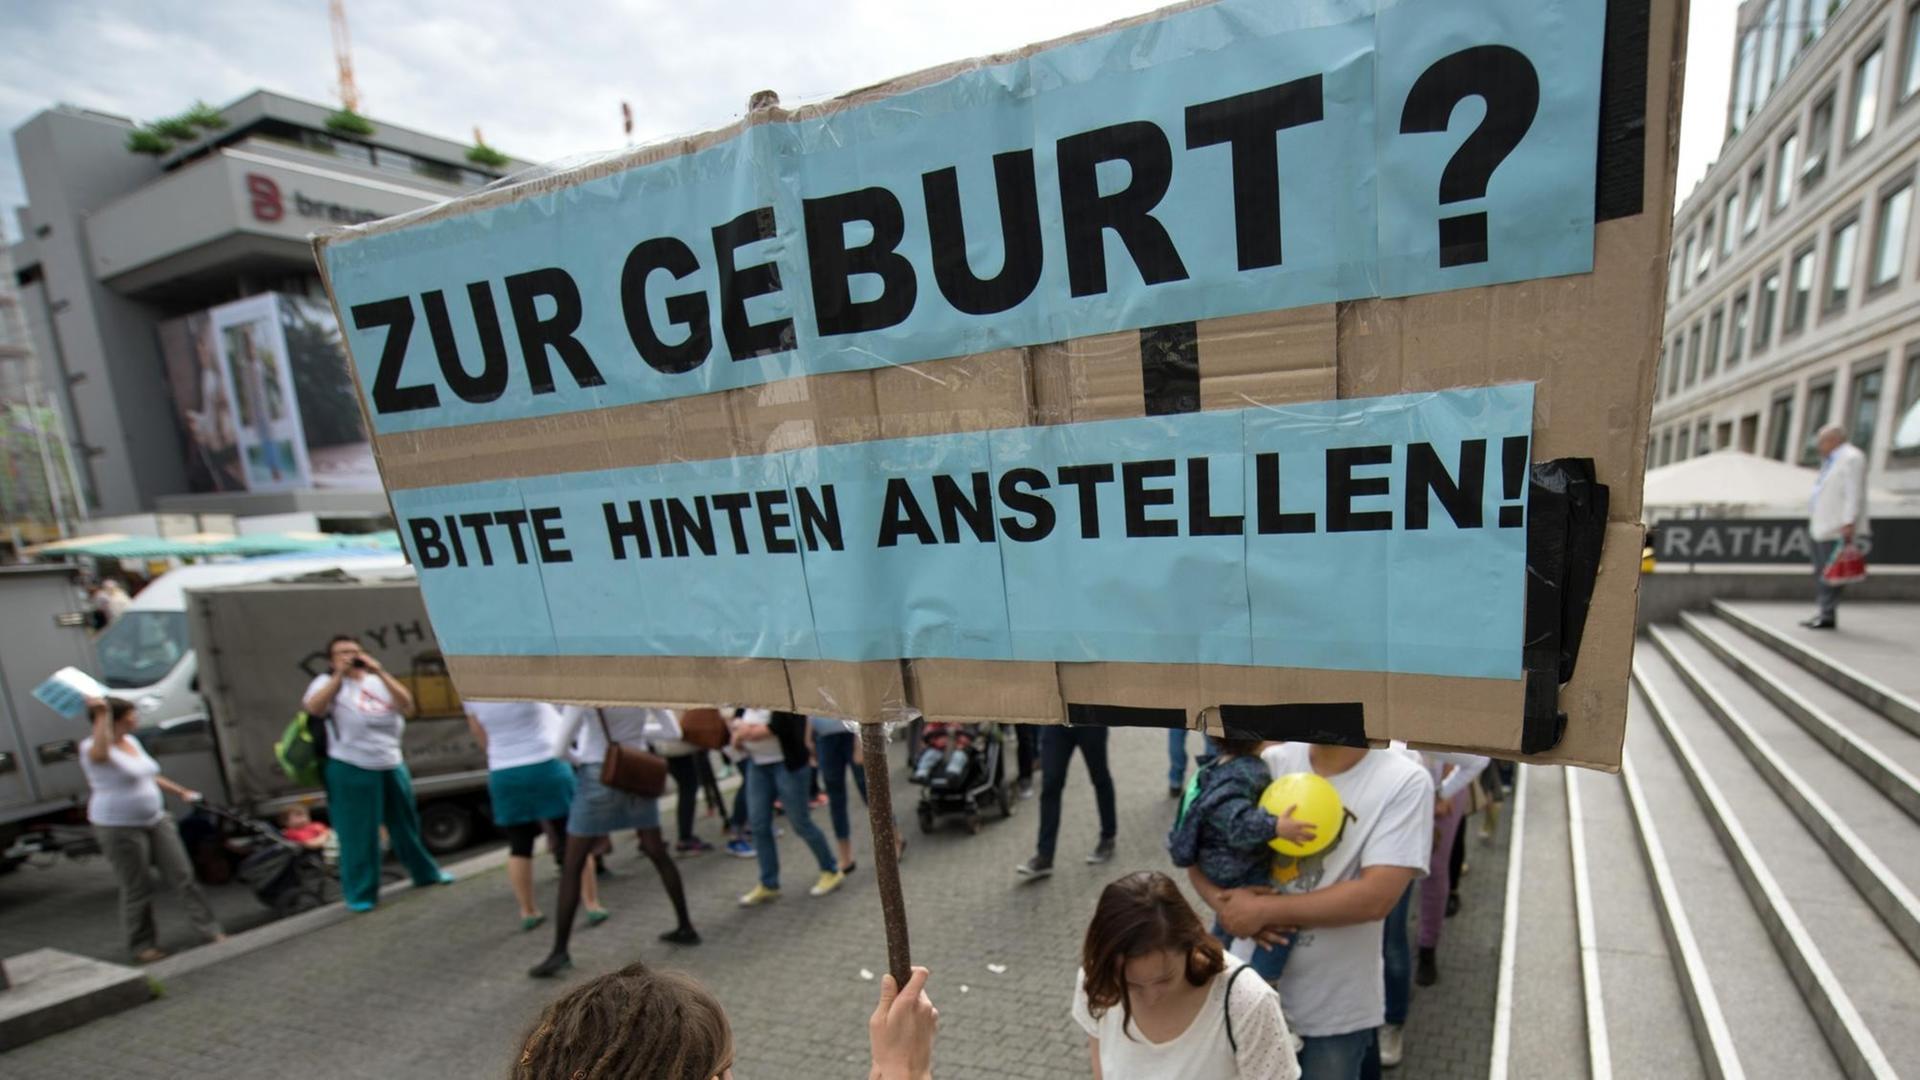 Eine Hebamme hält in Stuttgart (Baden-Württemberg) ein Schild hoch mit der Aufschrift "Zur Geburt? Bitte hinten anstellen!" Rund 50 Hebammen protestierten mit einem Flashmob für bessere Arbeitsbedingungen.